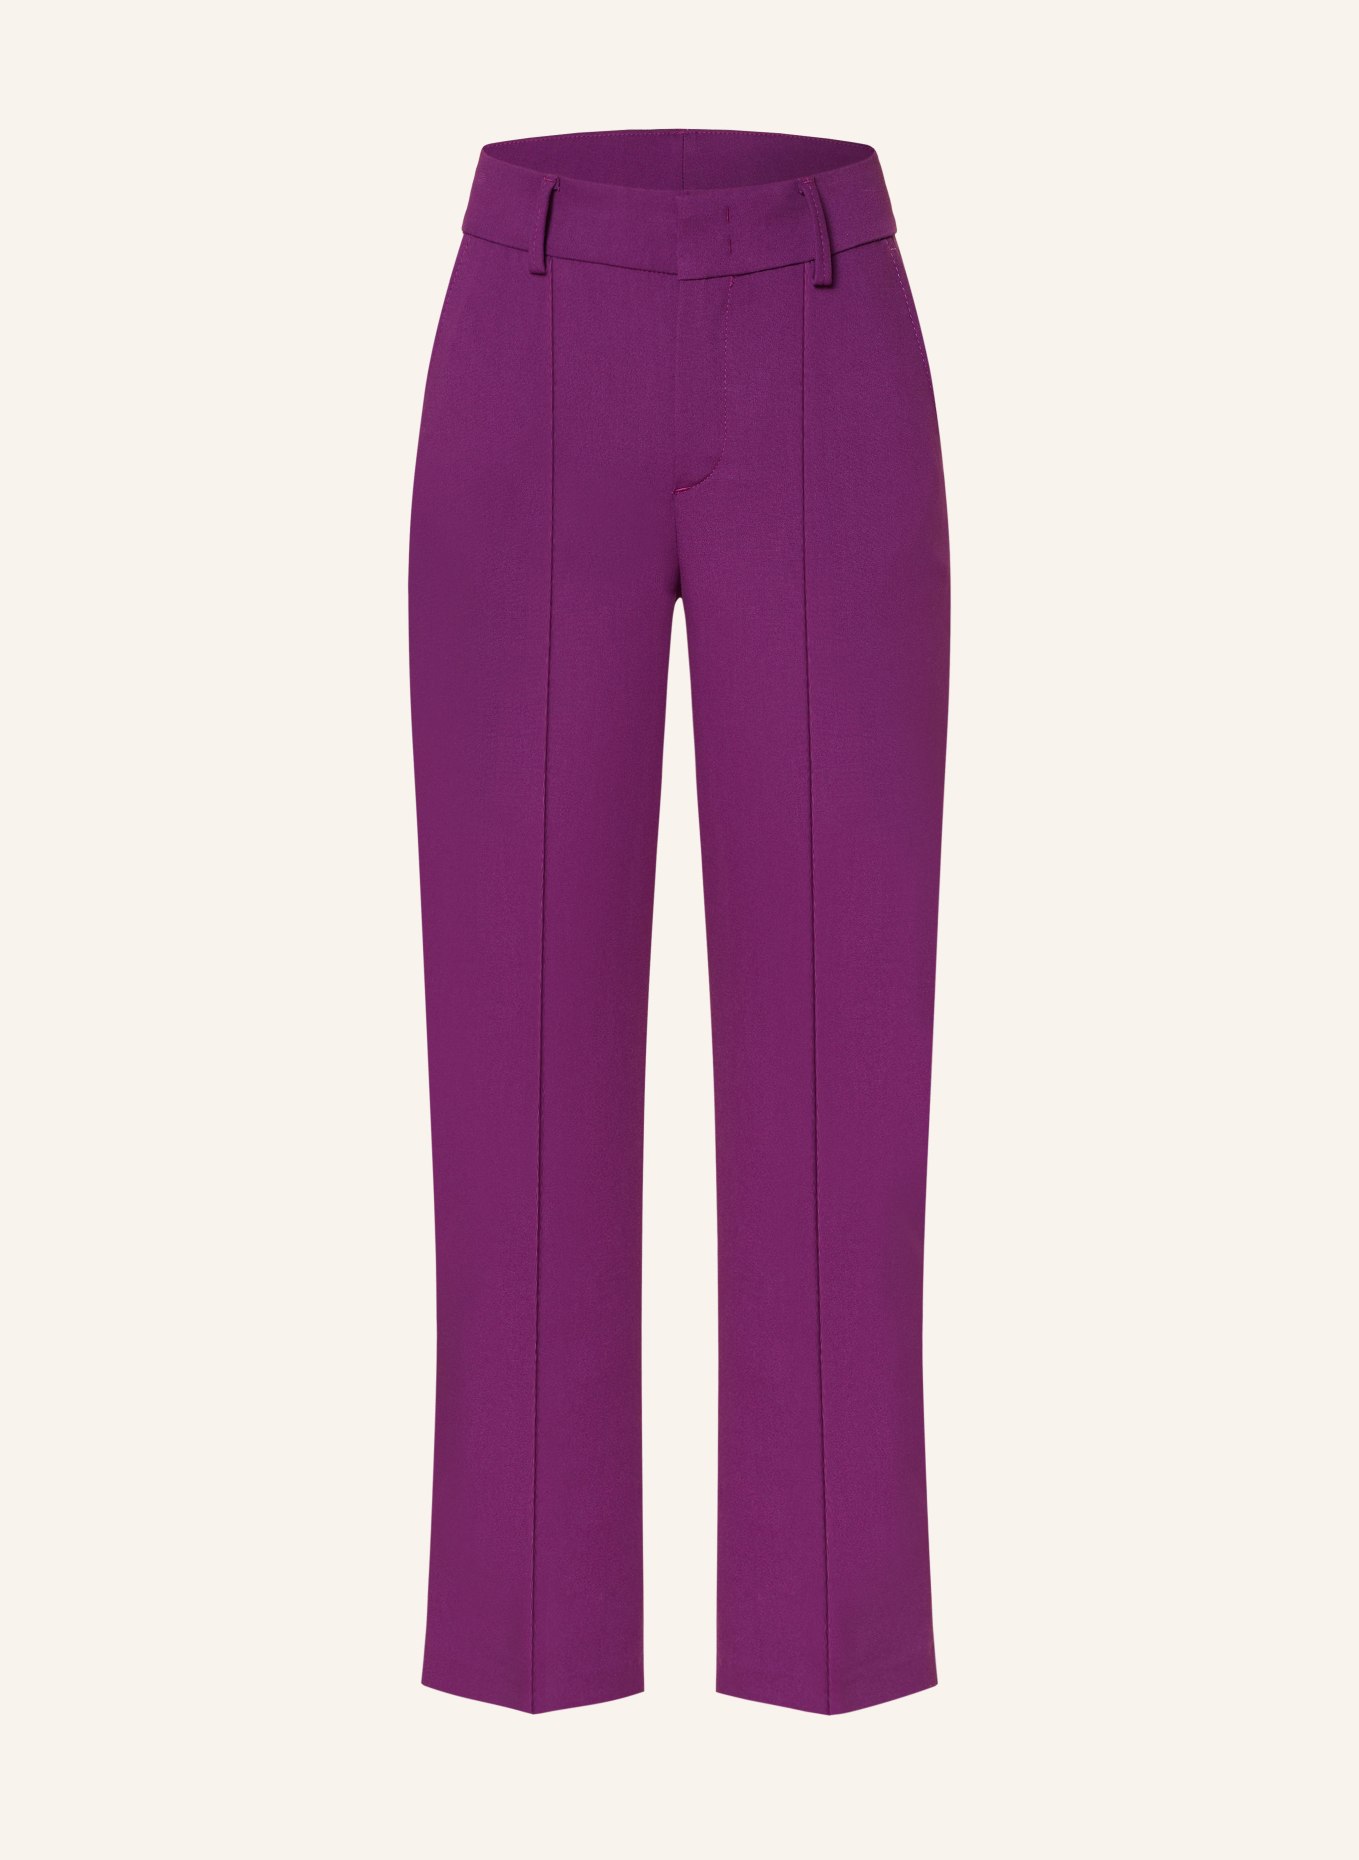 oui 7/8 pants, Color: PURPLE (Image 1)